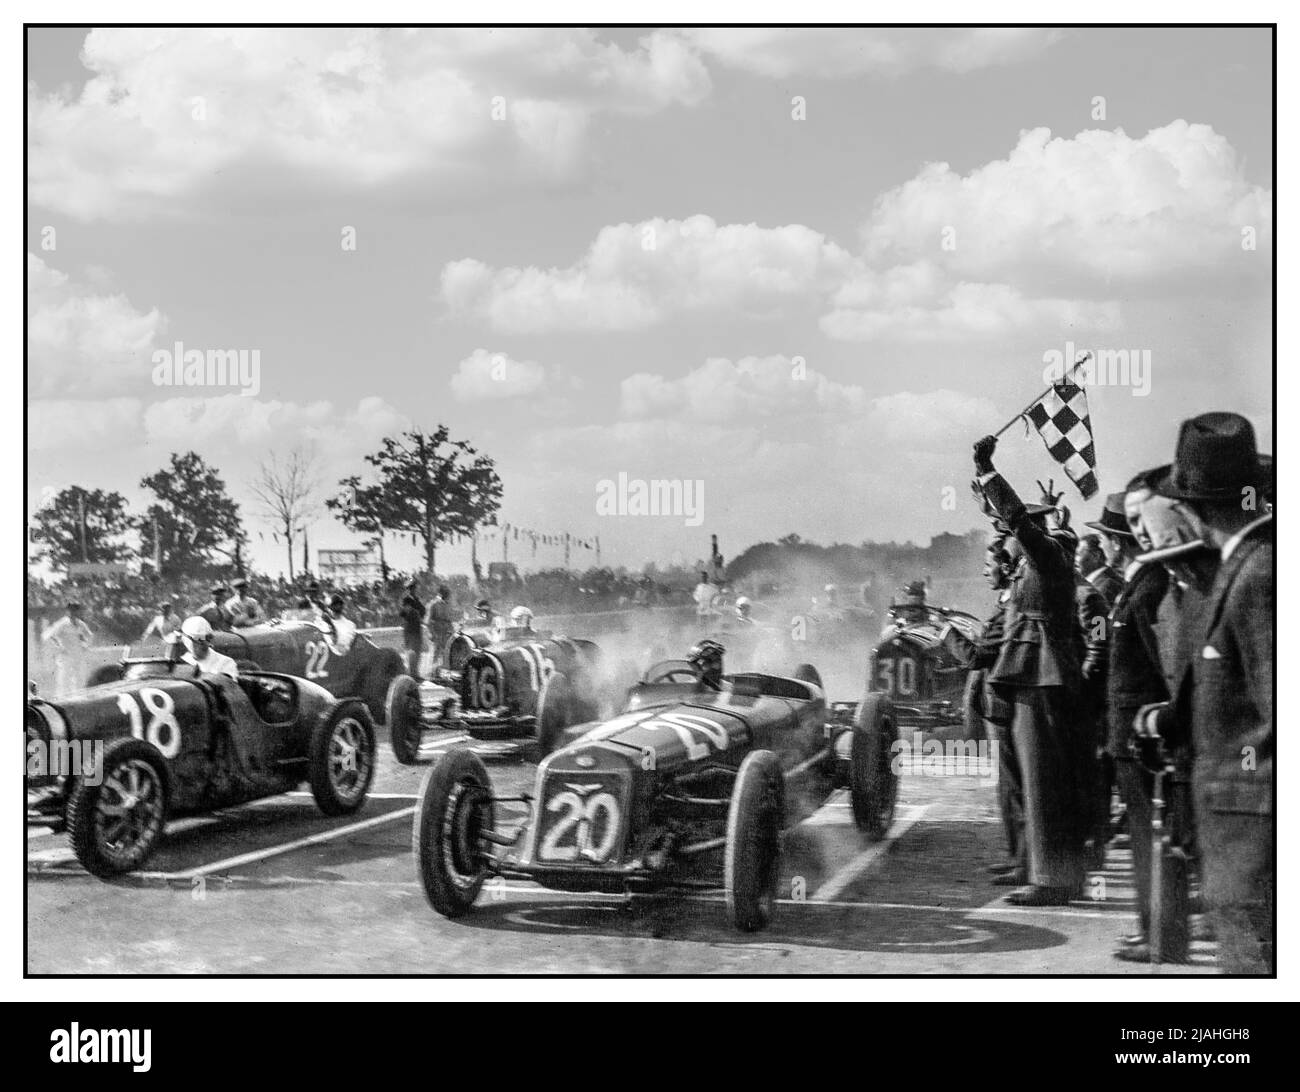 GRAN Premio D'ITALIA MONZA 1931 START GRID FLAG inizio del Gran Premio d'Italia 1931 1931 il Gran Premio d'Italia 1931 è stato una gara automobilistica Grand Prix svoltasi a Monza tra il 24 maggio 1931 e il 28 maggio 1931. La gara è stata la prima delle tre Gran Premi che hanno fatto parte del Campionato europeo inaugurale. L’Alfa Romeo lavora in squadra l’abbinamento di Giuseppe Campari e Tazio Nuvolari ha vinto la gara, davanti ai loro compagni di squadra Ferdinando Minoia e Bacchonin Borzacchini in secondo luogo, mentre il terzo posto è andato alle opere Bugattis di Albert Divo e Guy Bouriat. Questa è la corsa più lunga della storia, della durata di 100 ore. Foto Stock